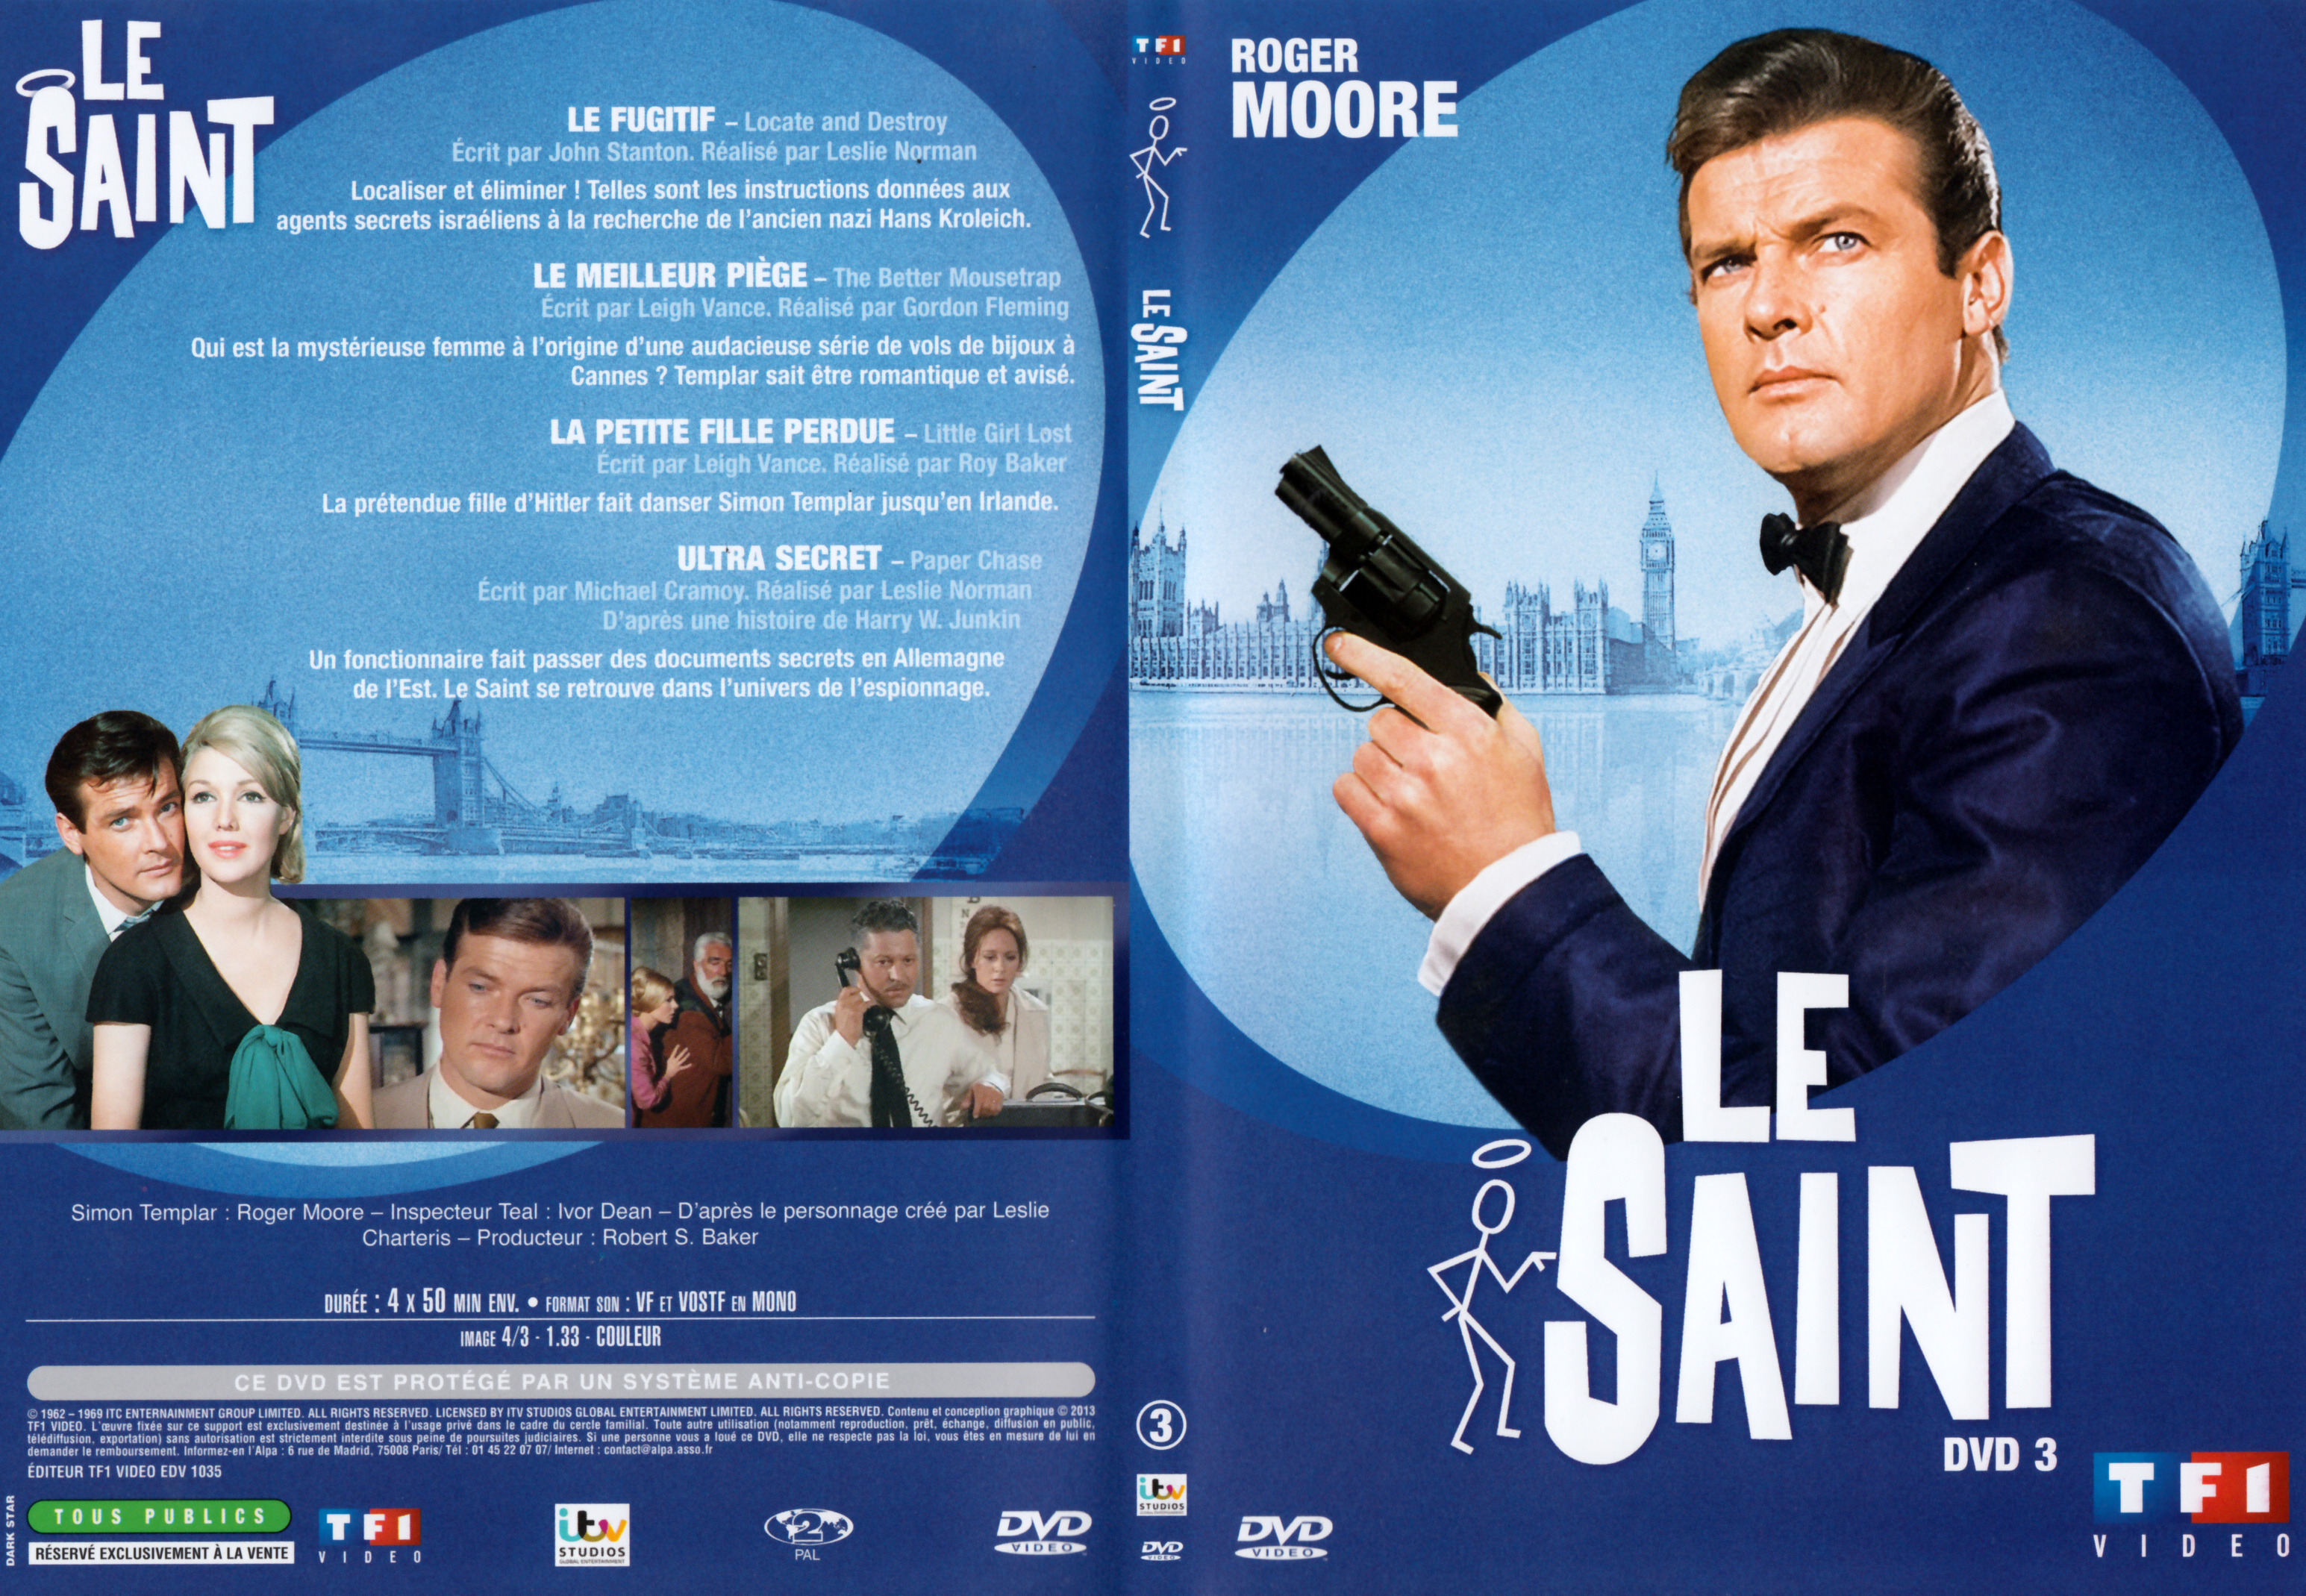 Jaquette DVD Le saint Saison 4 DVD 3